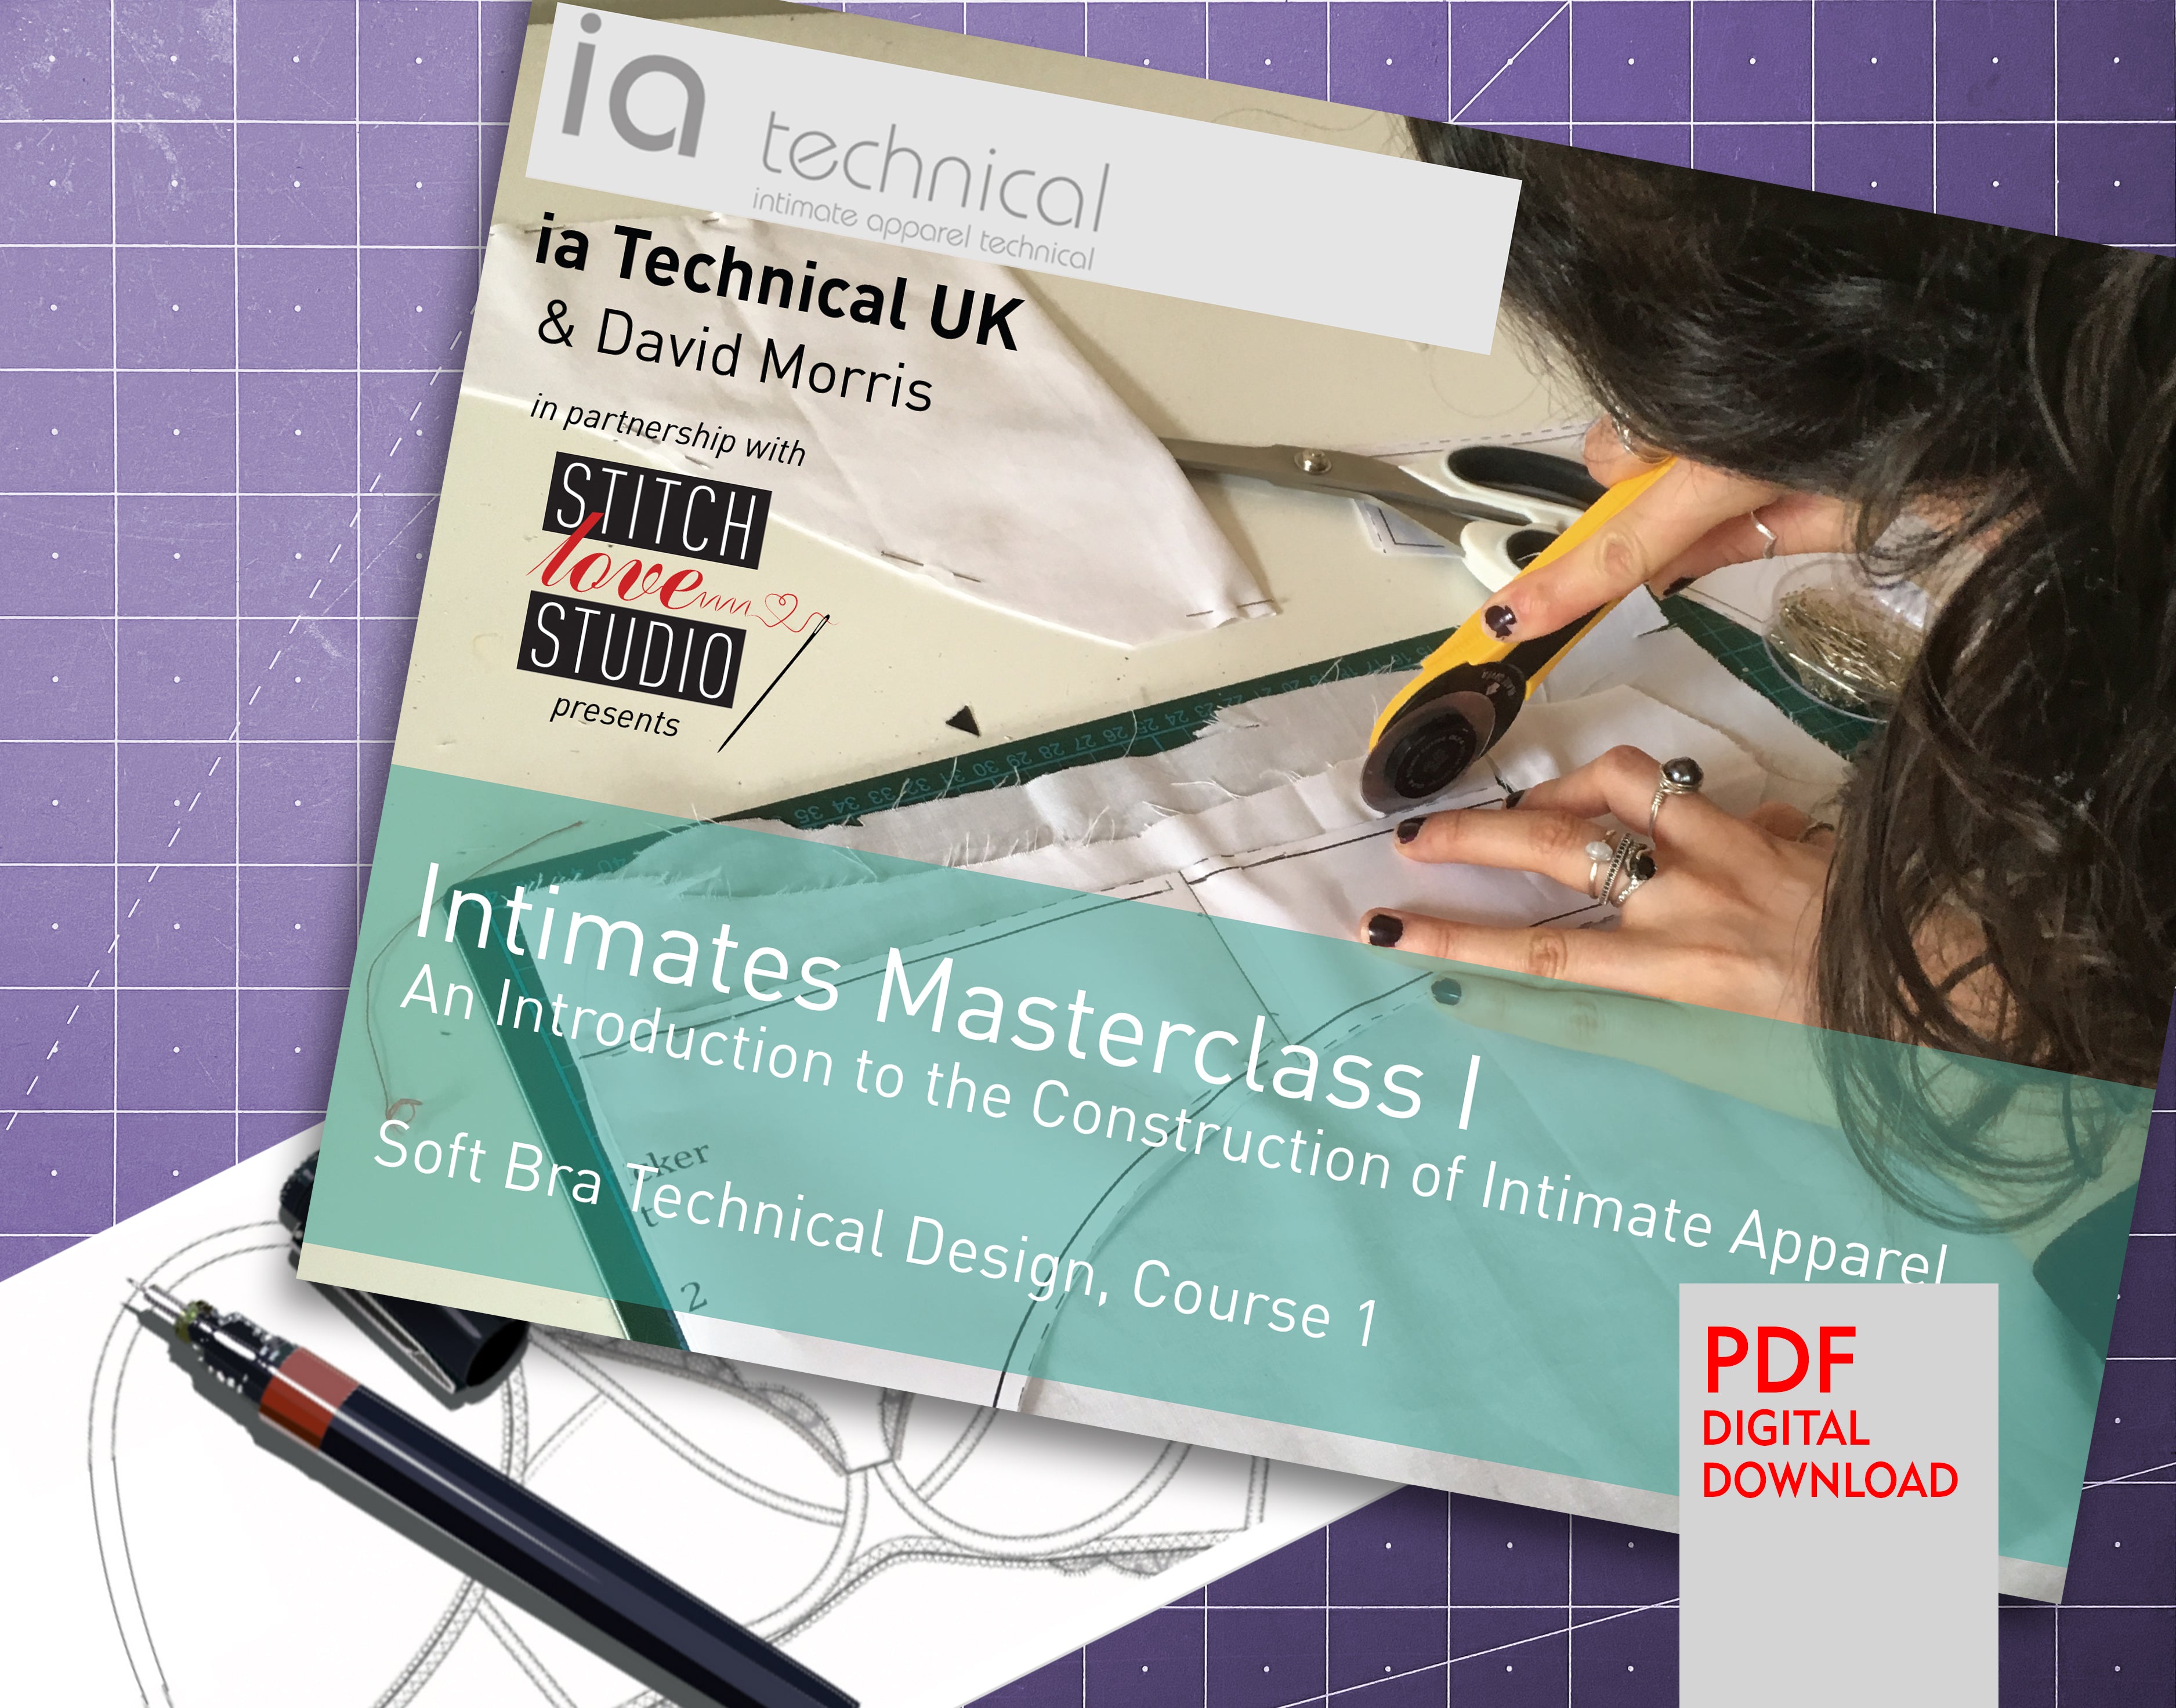 Intimates Masterclass I, Soft Bra Technical Design, Course 1 - Stitch Love Studio